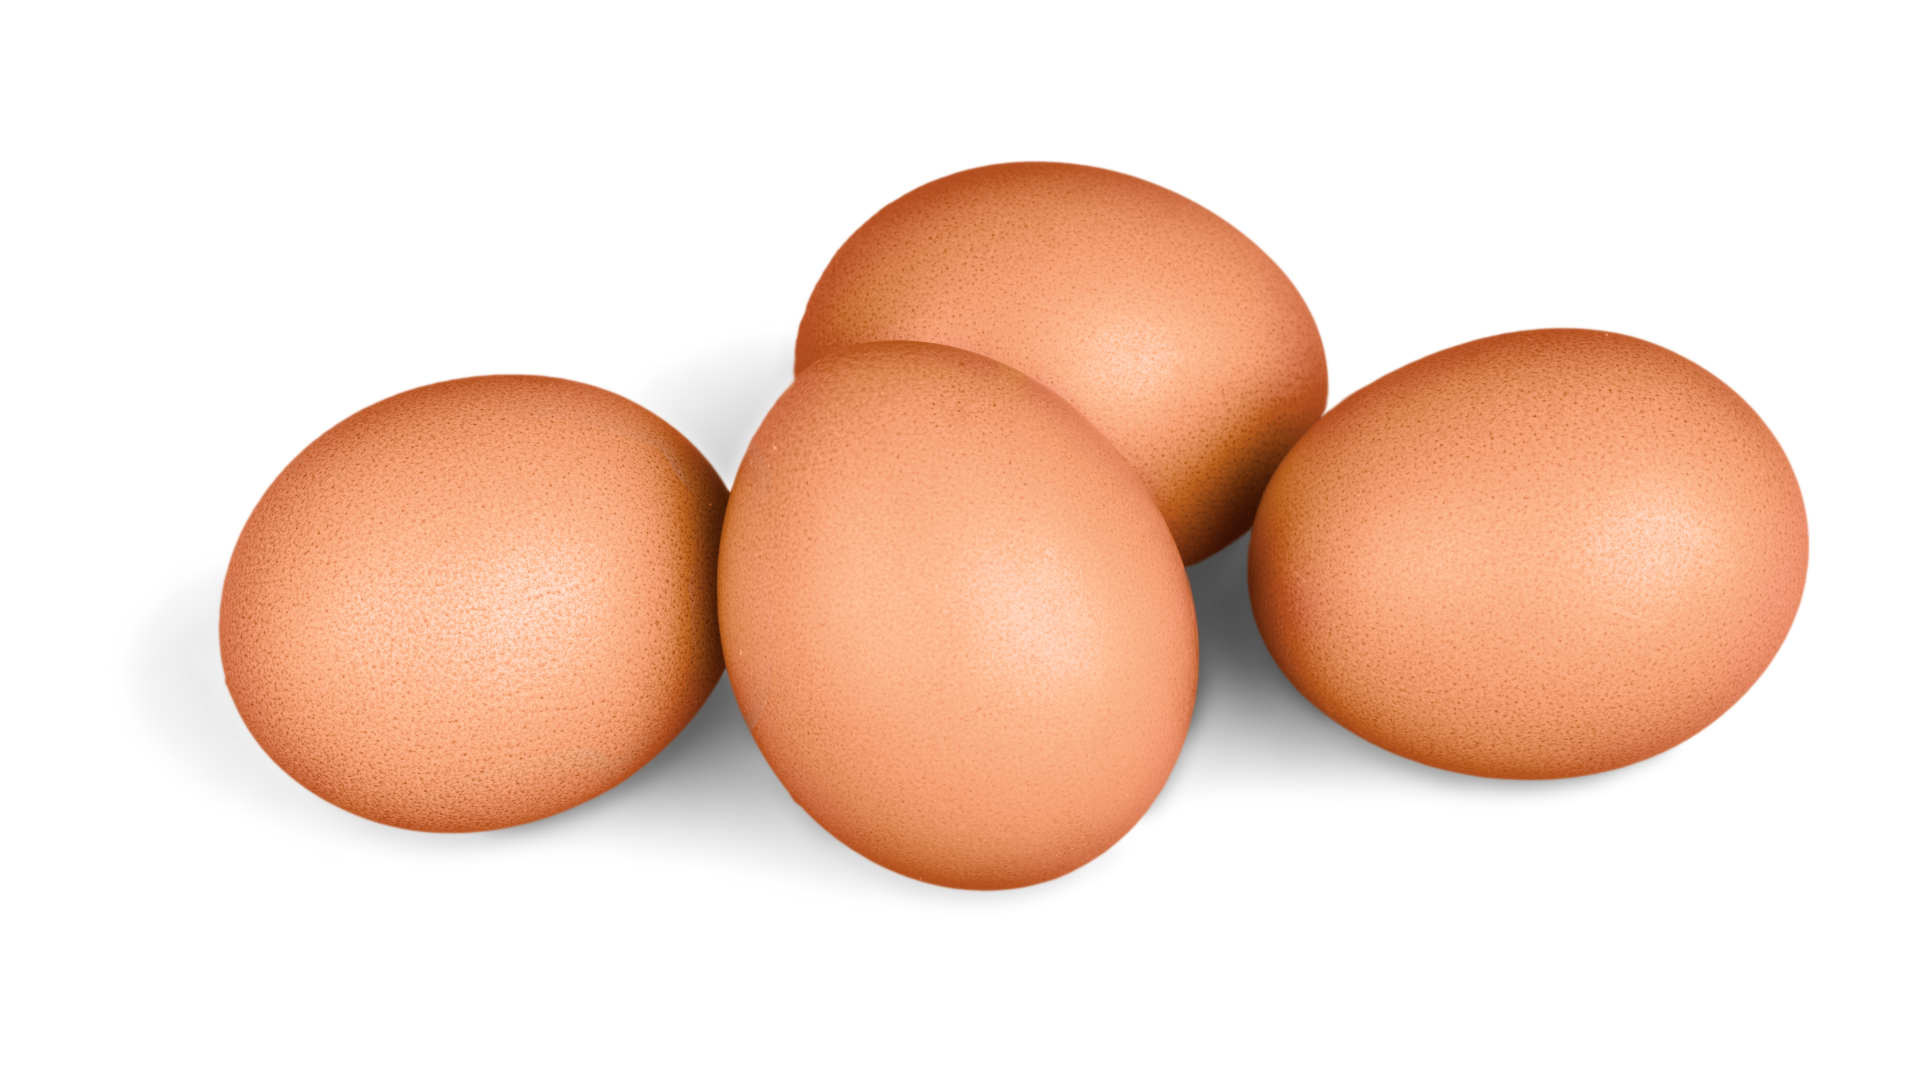 Третье яичко. Три яйца. Открытые яйца. Три яйца межчикие. Картина три яйца.